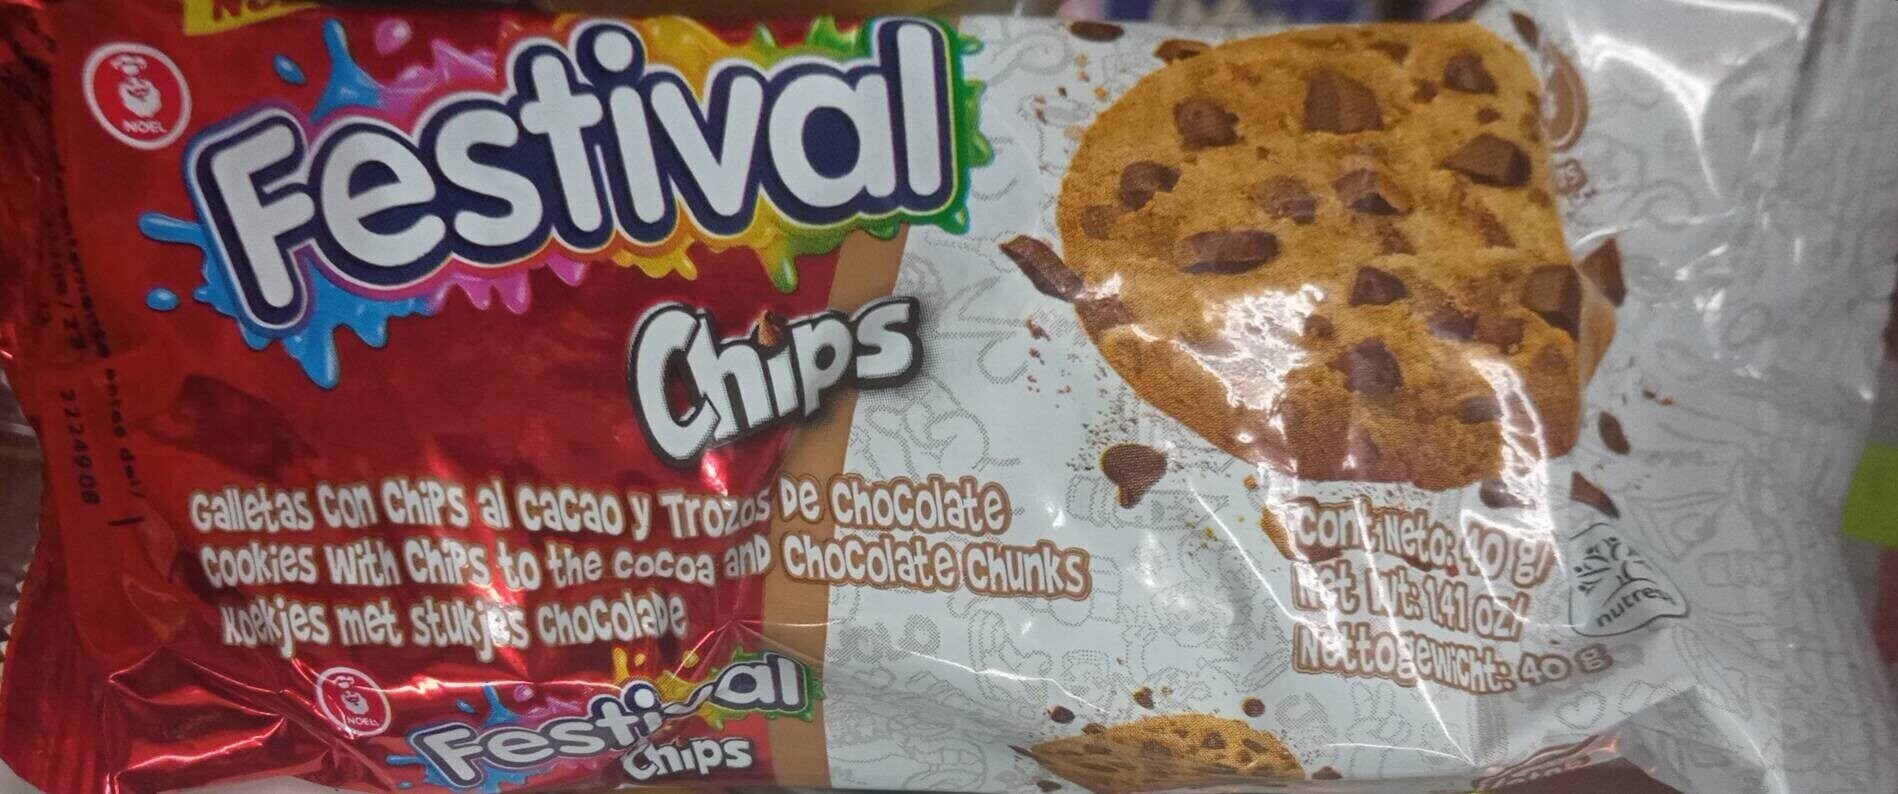 Festival chips - Produktua - es